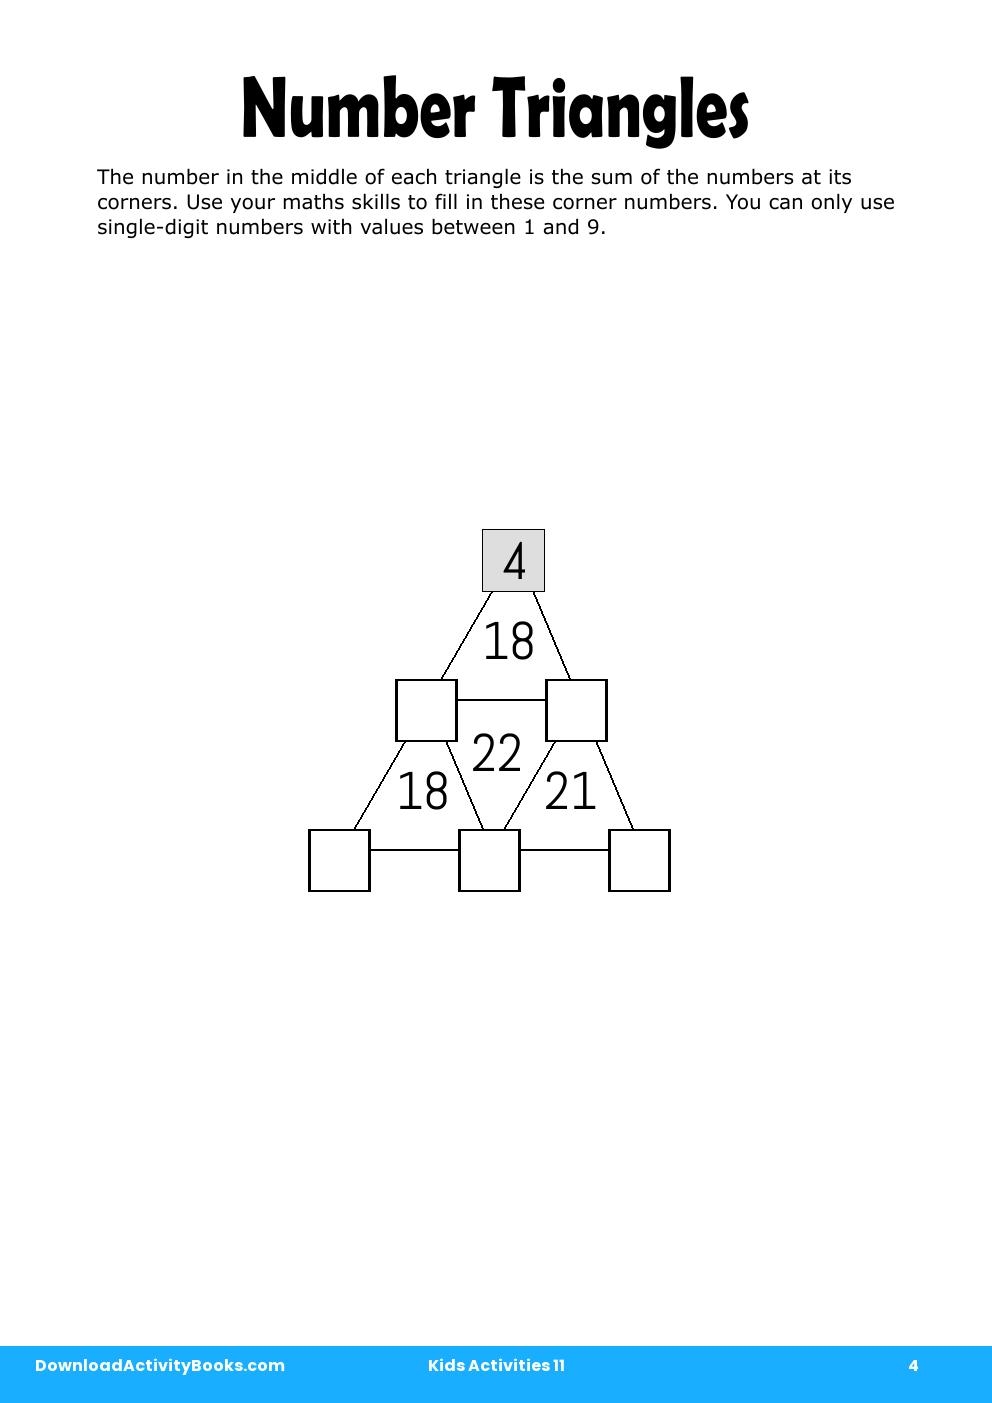 Number Triangles in Kids Activities 11